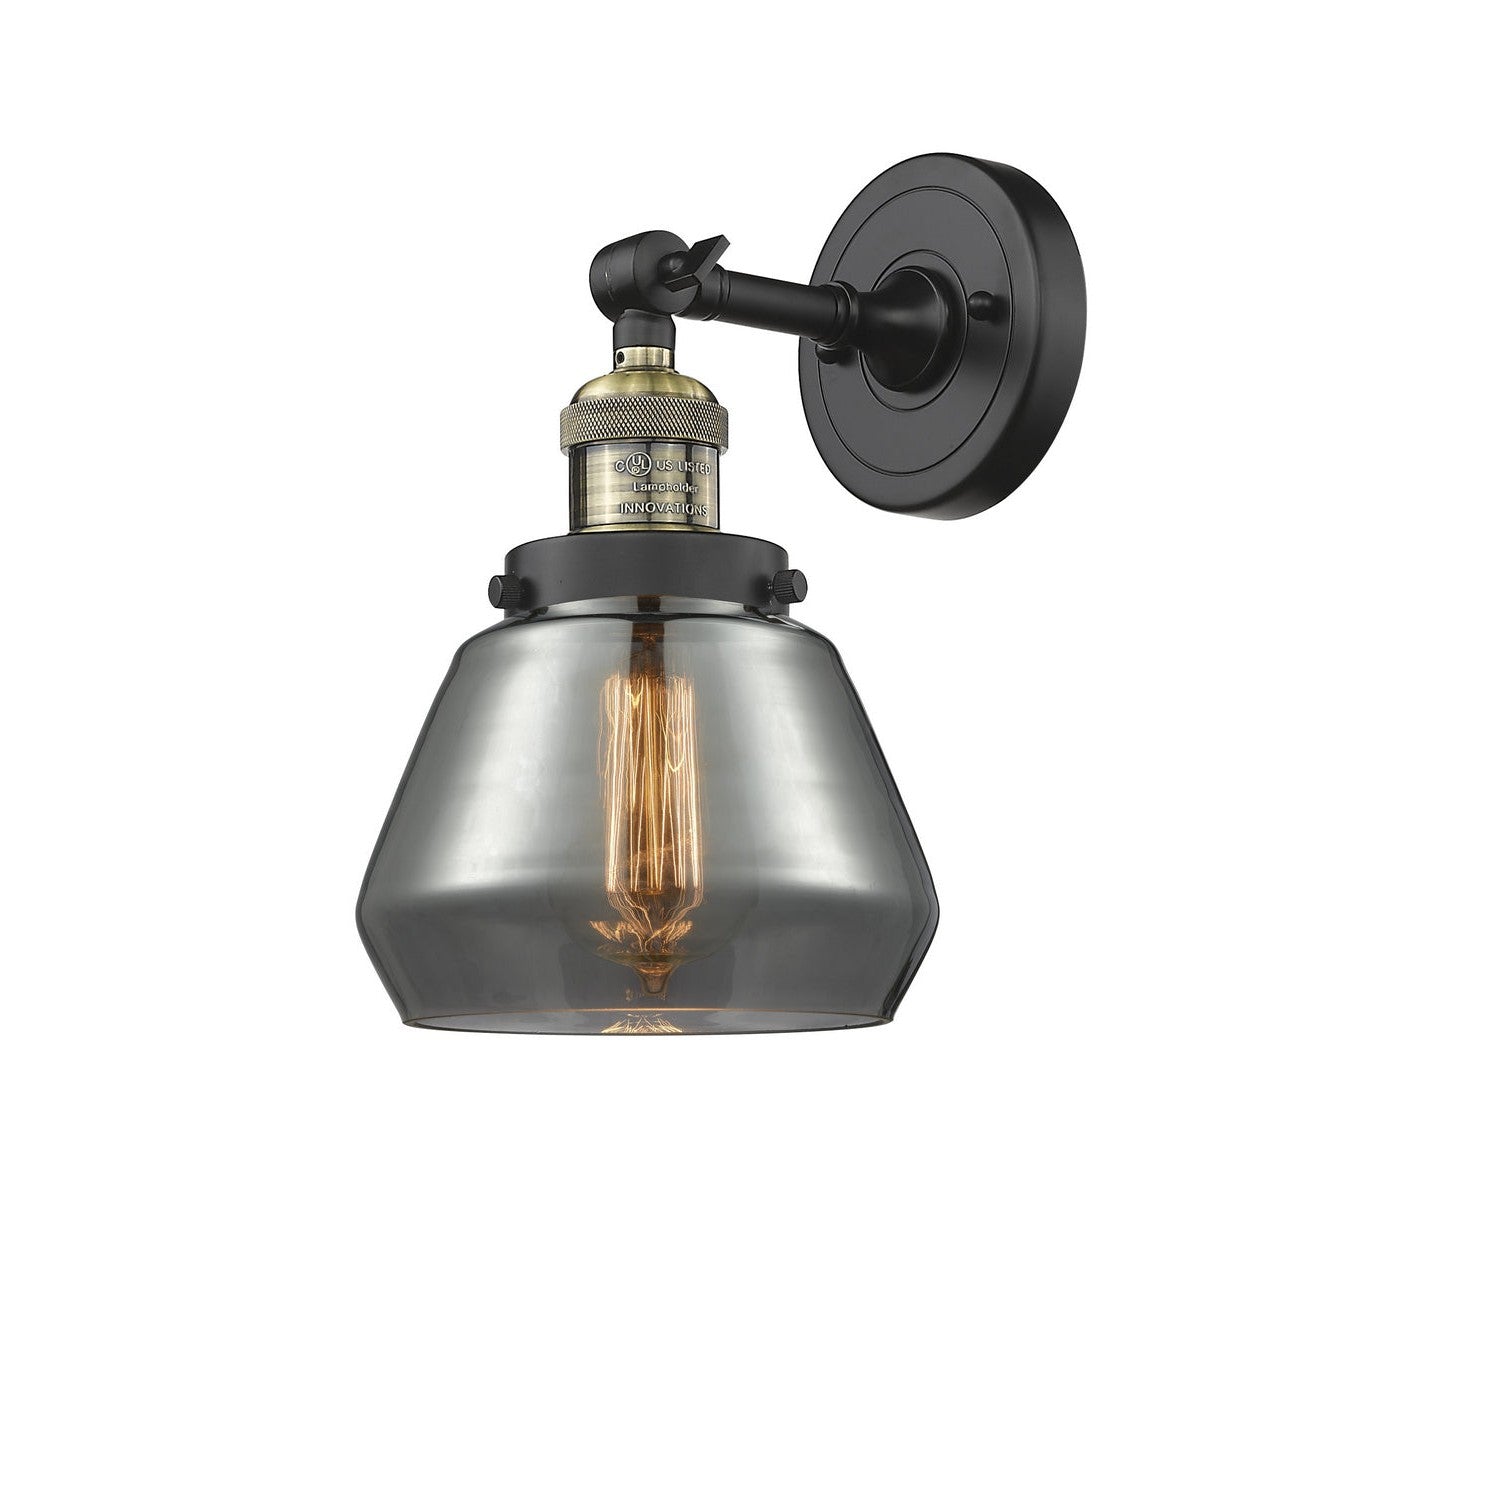 Innovations Franklin Restoration 203-BAB-G173 Wall Sconce Light - Black Antique Brass